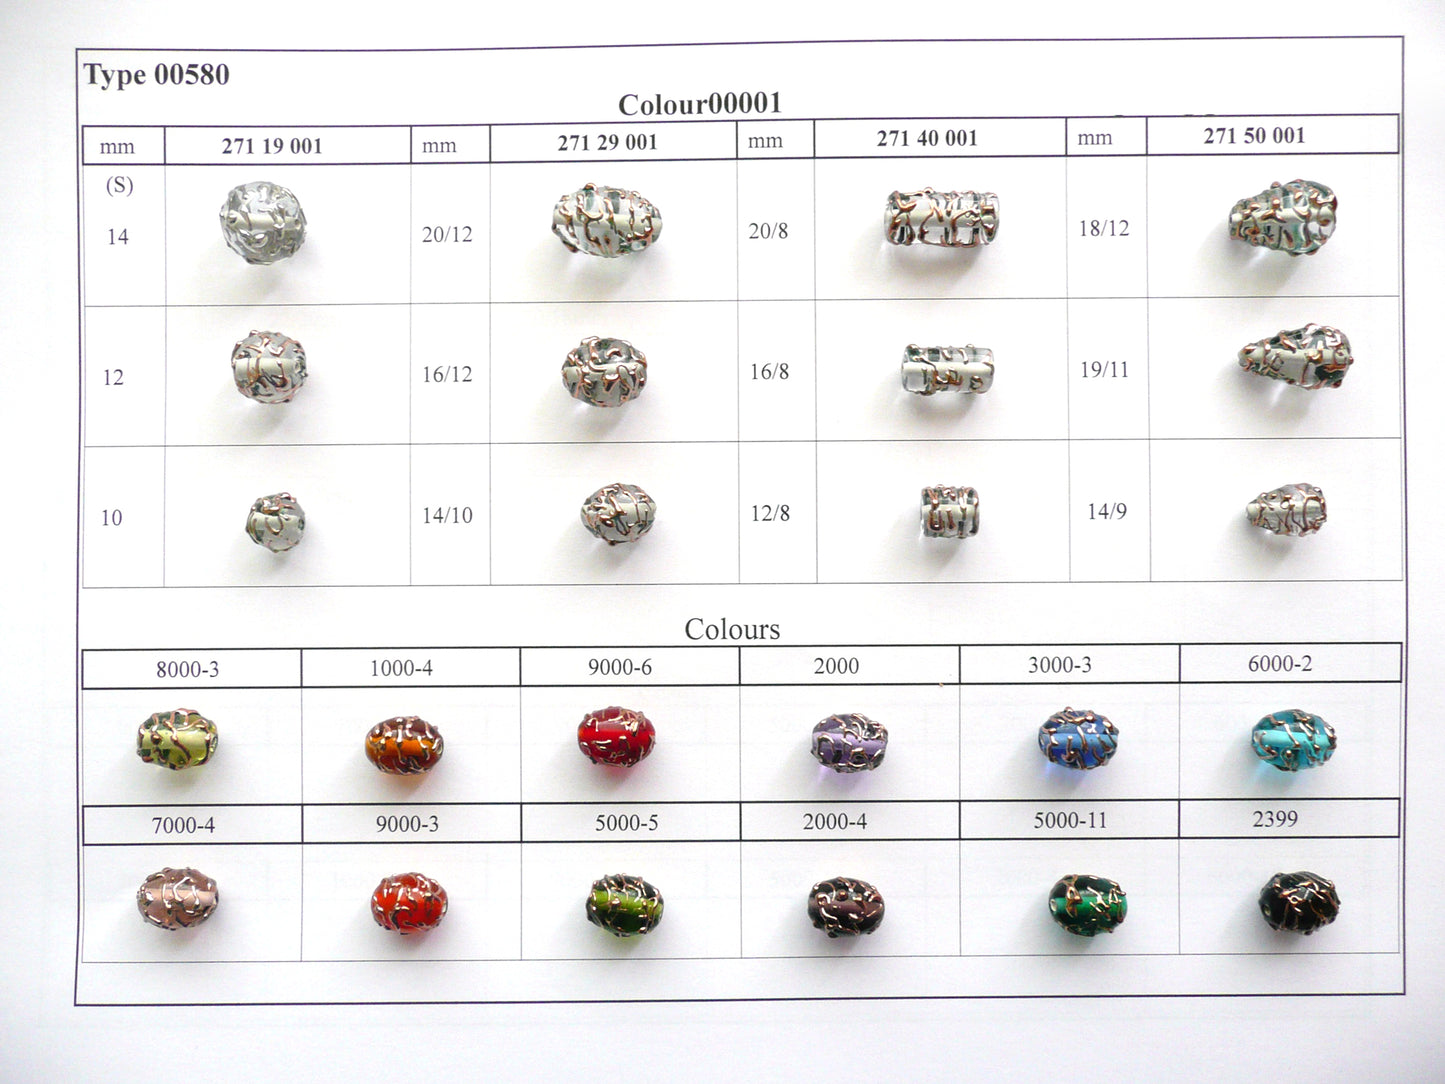 30 pcs Lampwork Beads 580 / Cylinder (271-40-001), Handmade, Preciosa Glass, Czech Republic